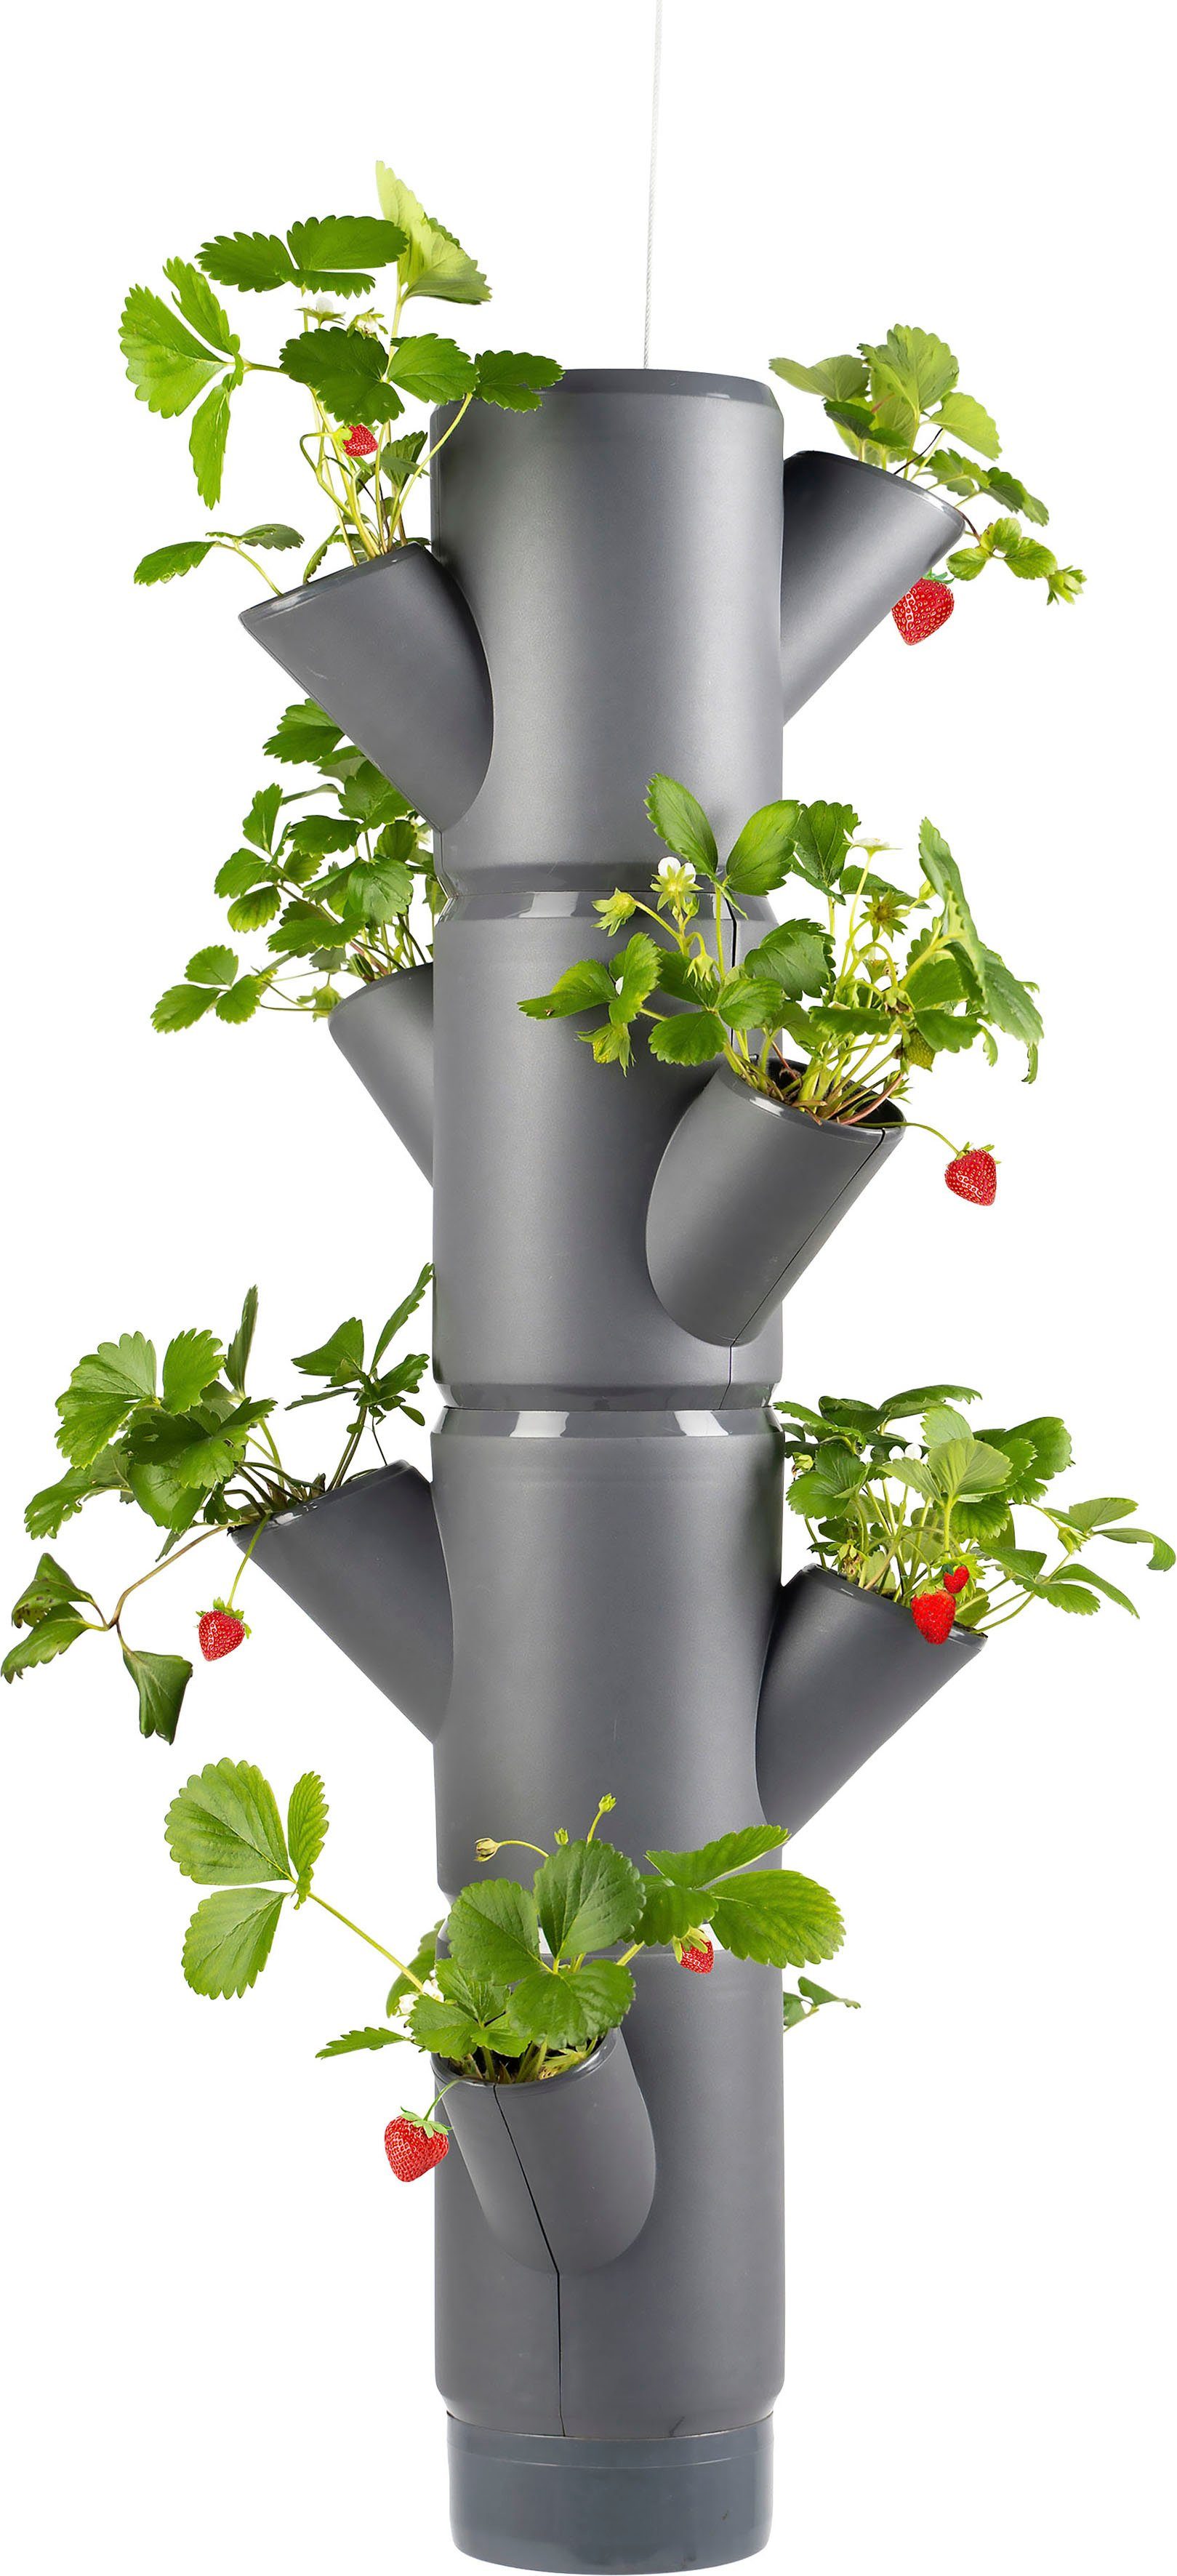 Gusta Garden Pflanzkübel SISSI STRAWBERRY Erdbeerampel, 4 Etagen inkl. Hängeset, Erdbeeren anbauen leicht gemacht anthrazit | Pflanzkübel